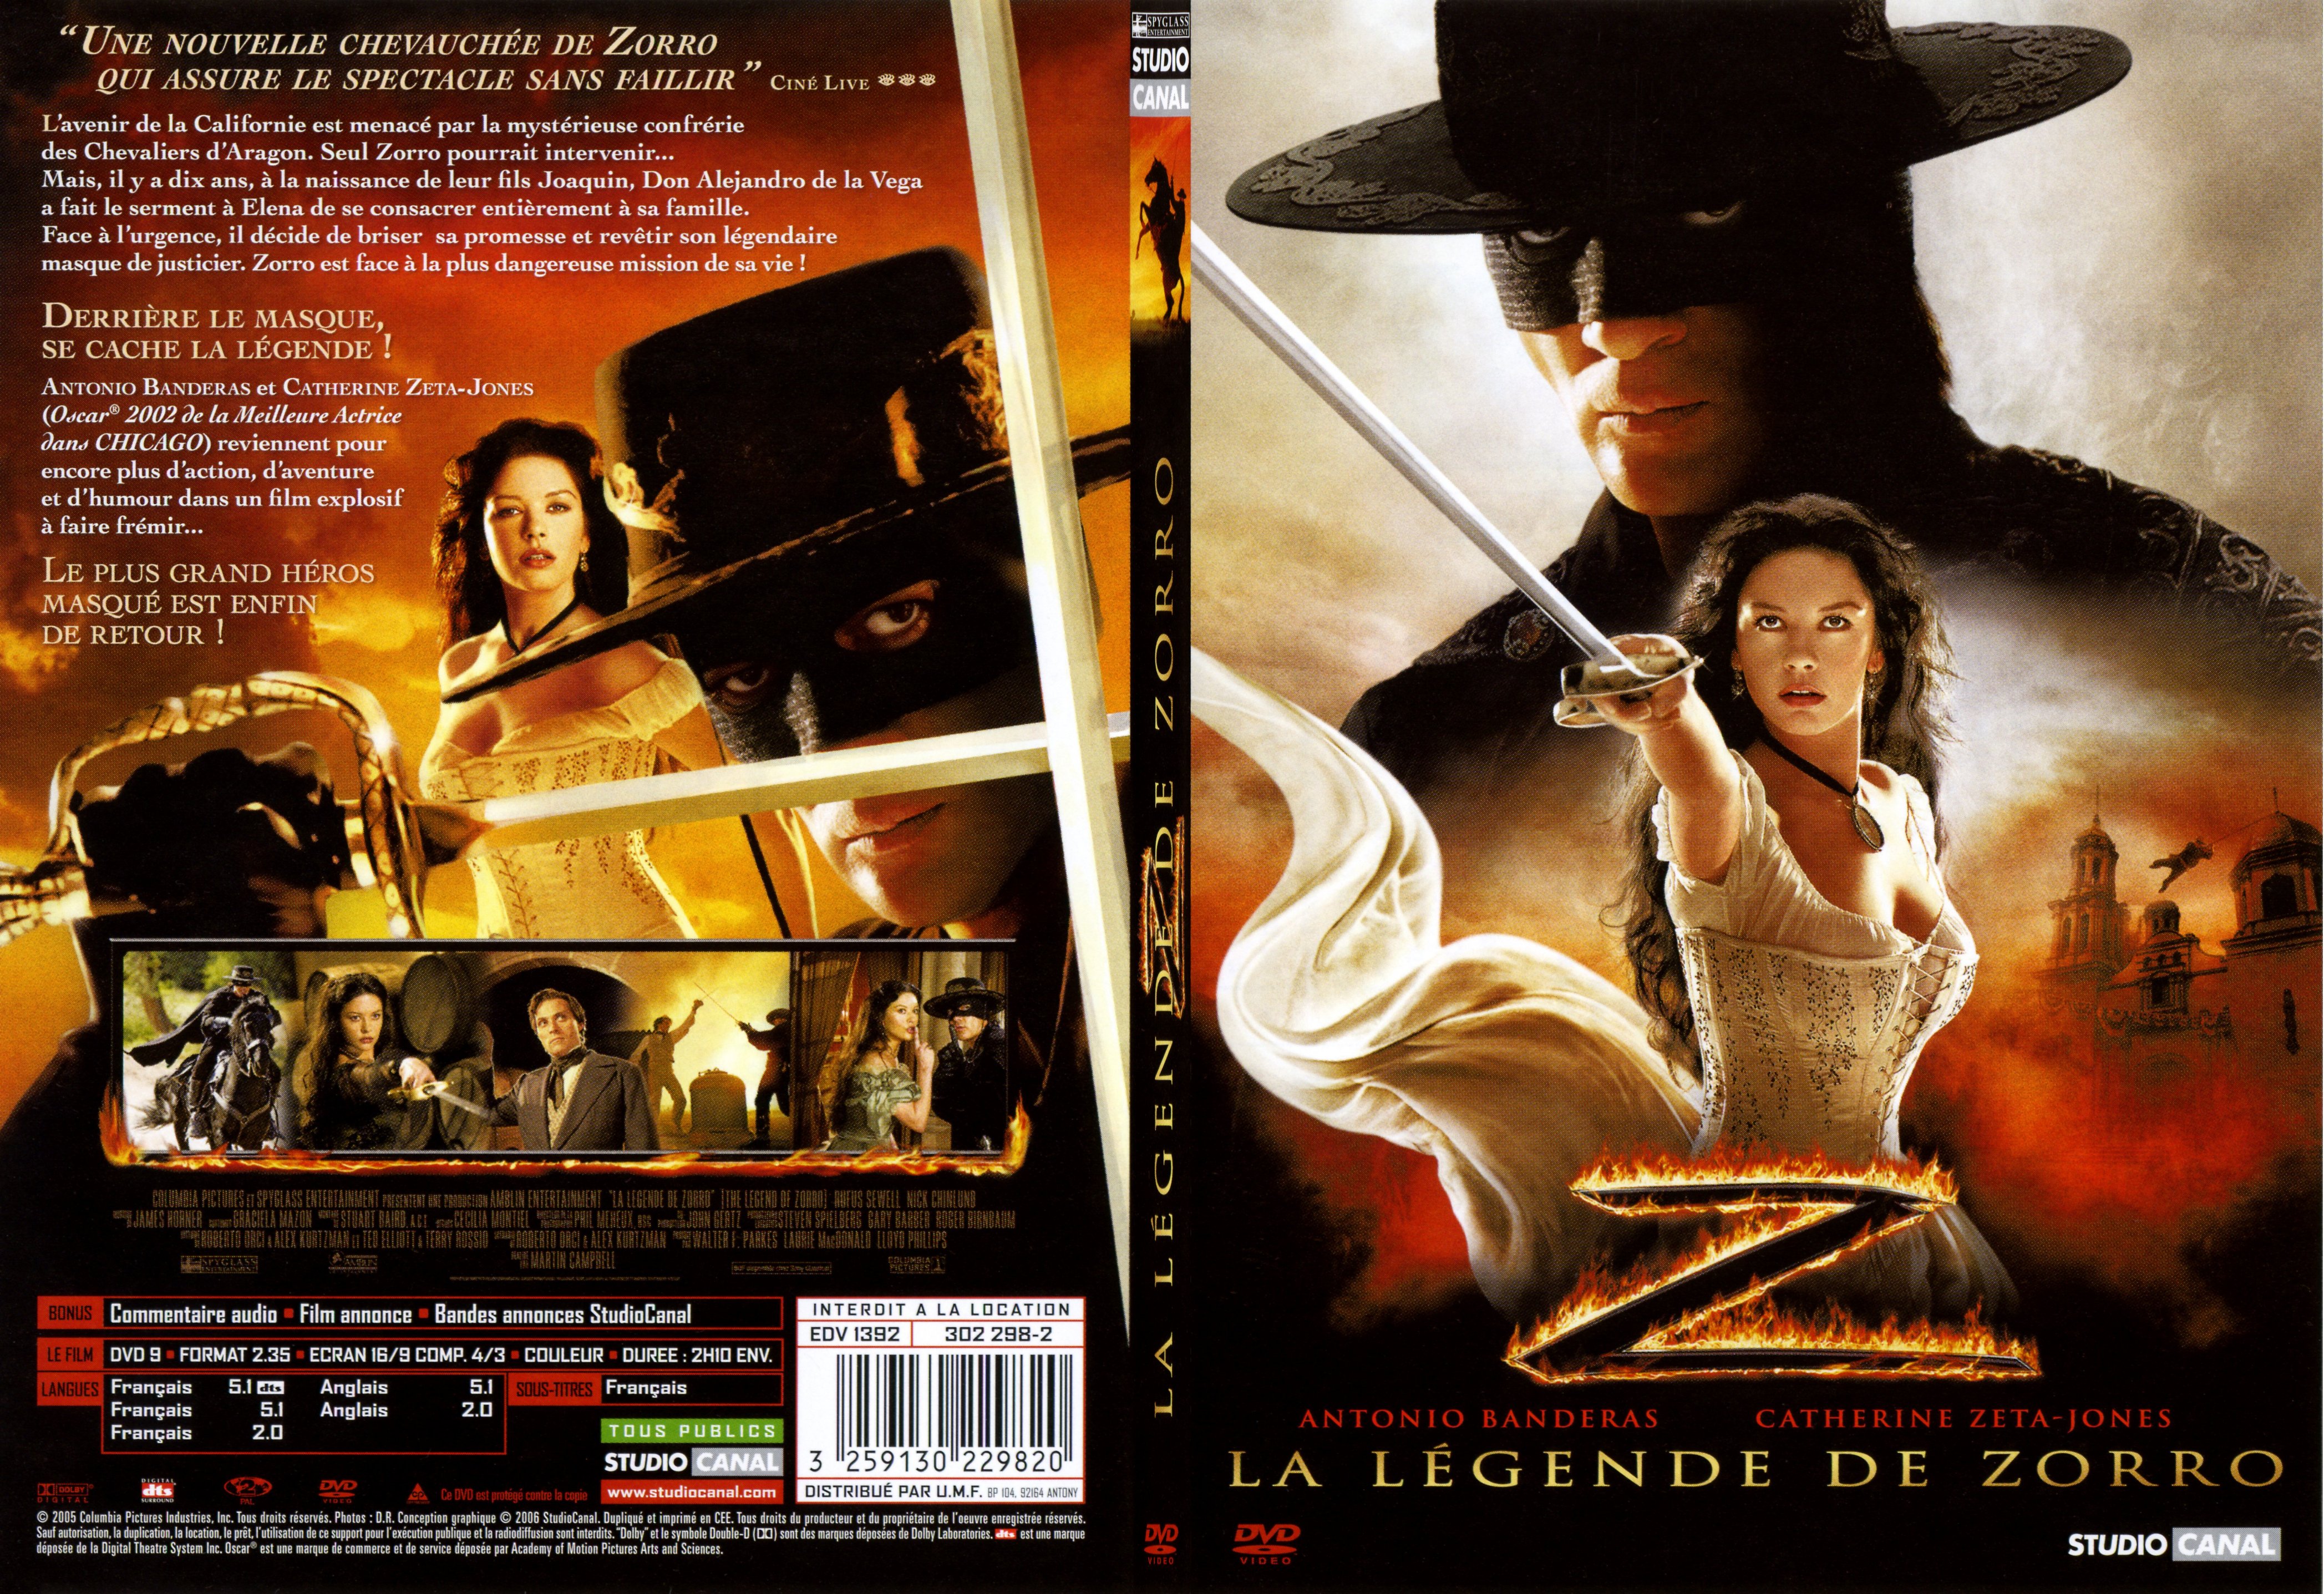 Jaquette DVD La lgende de Zorro - SLIM v2